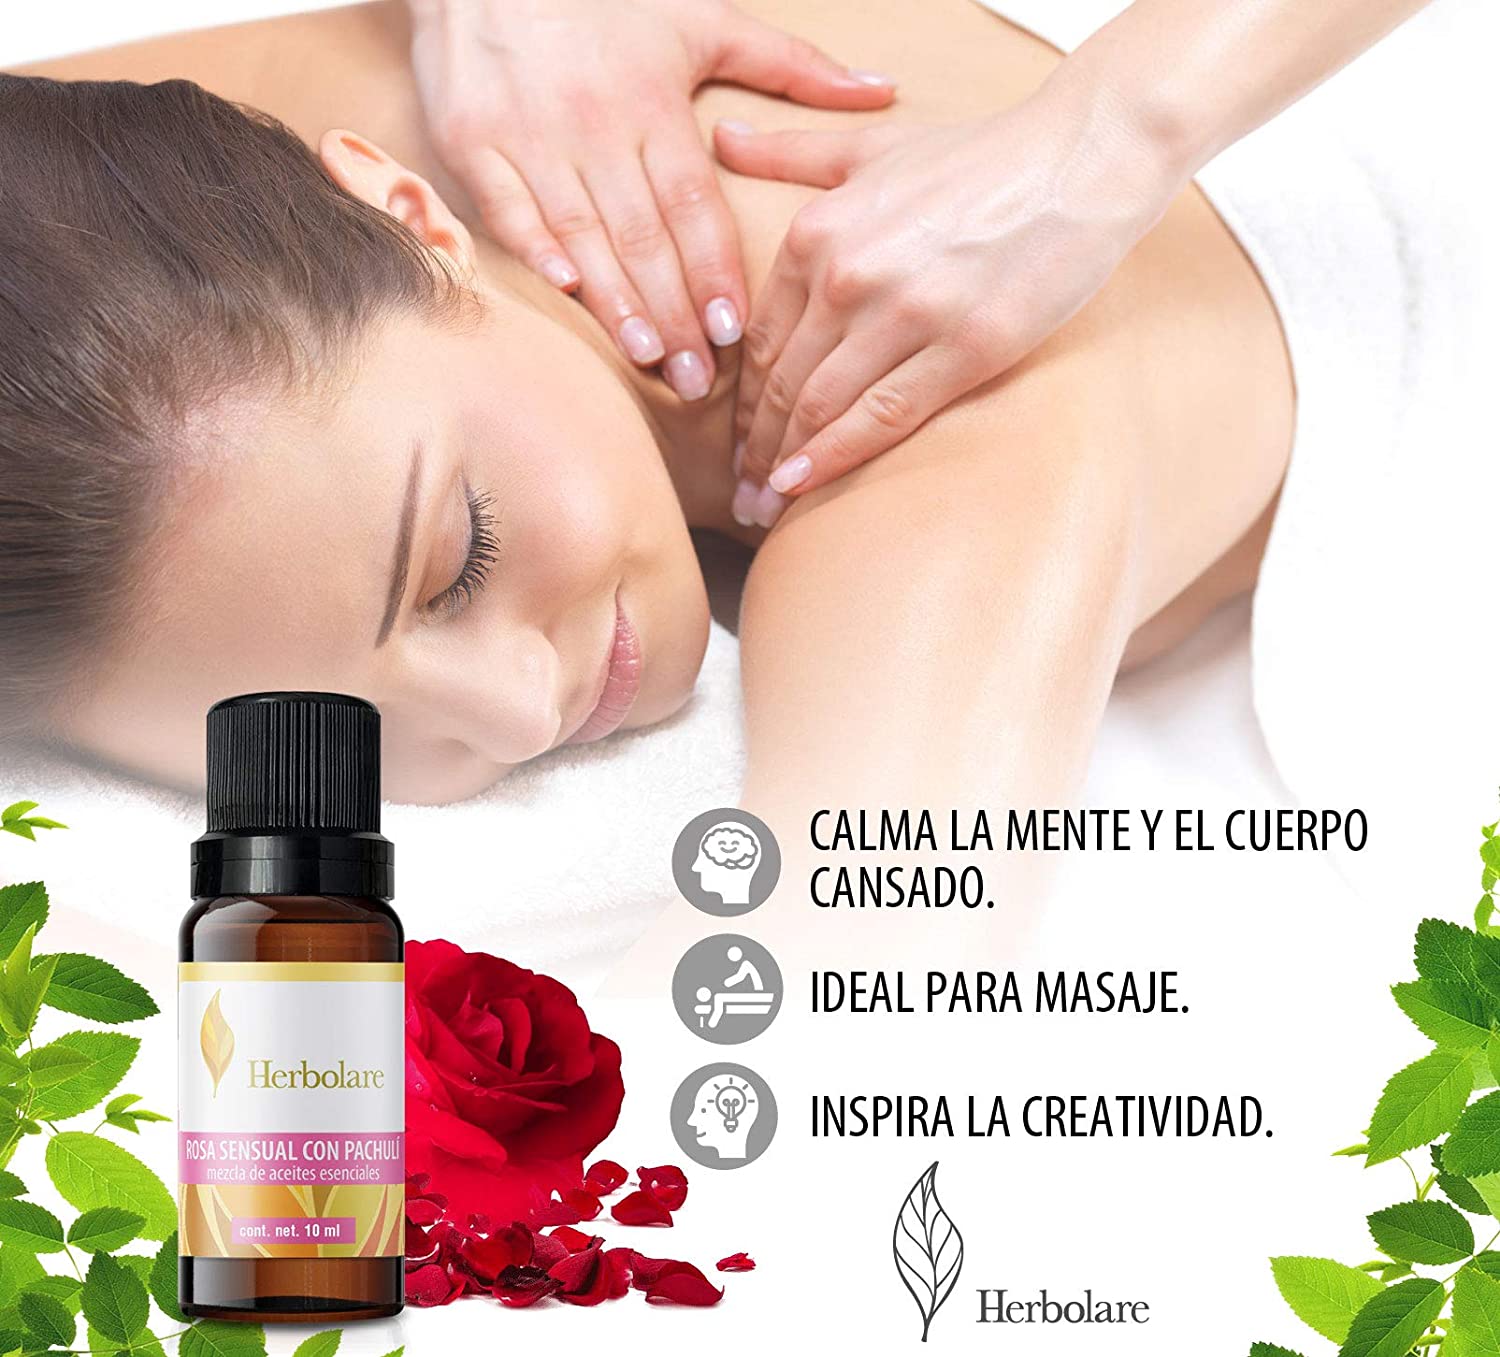 Rosa Sensual con Pachuli 10 ml Herbolare. Mezcla de aceites puros mejoran el ánimo y la fatiga mental.